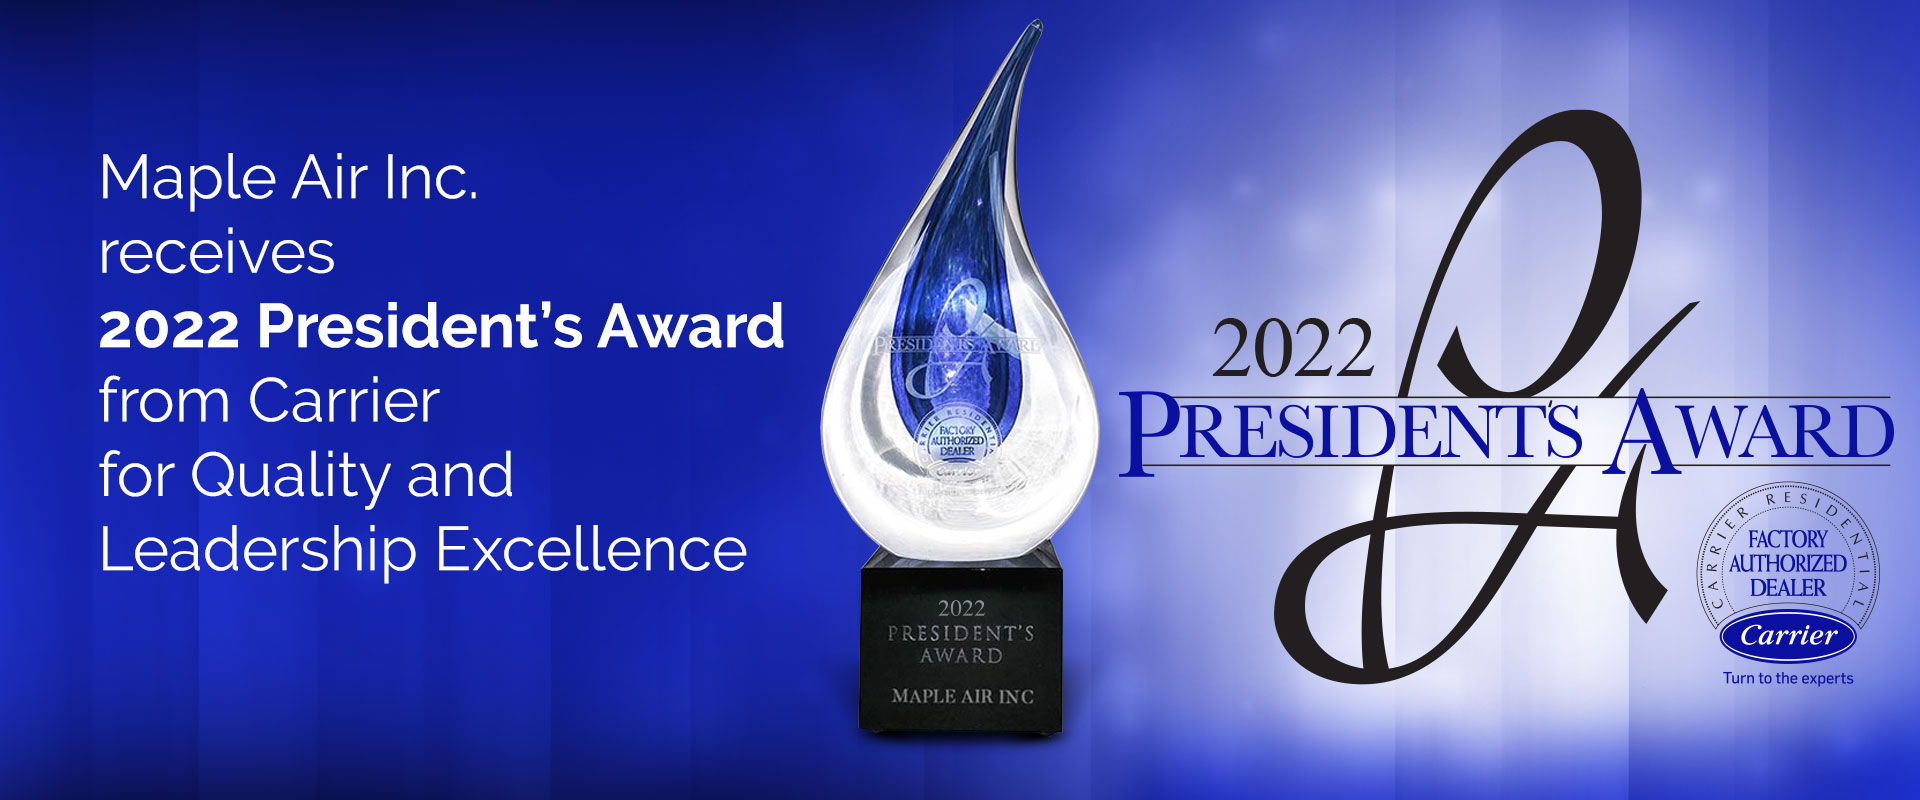 Carrier President's Award 2022 winner